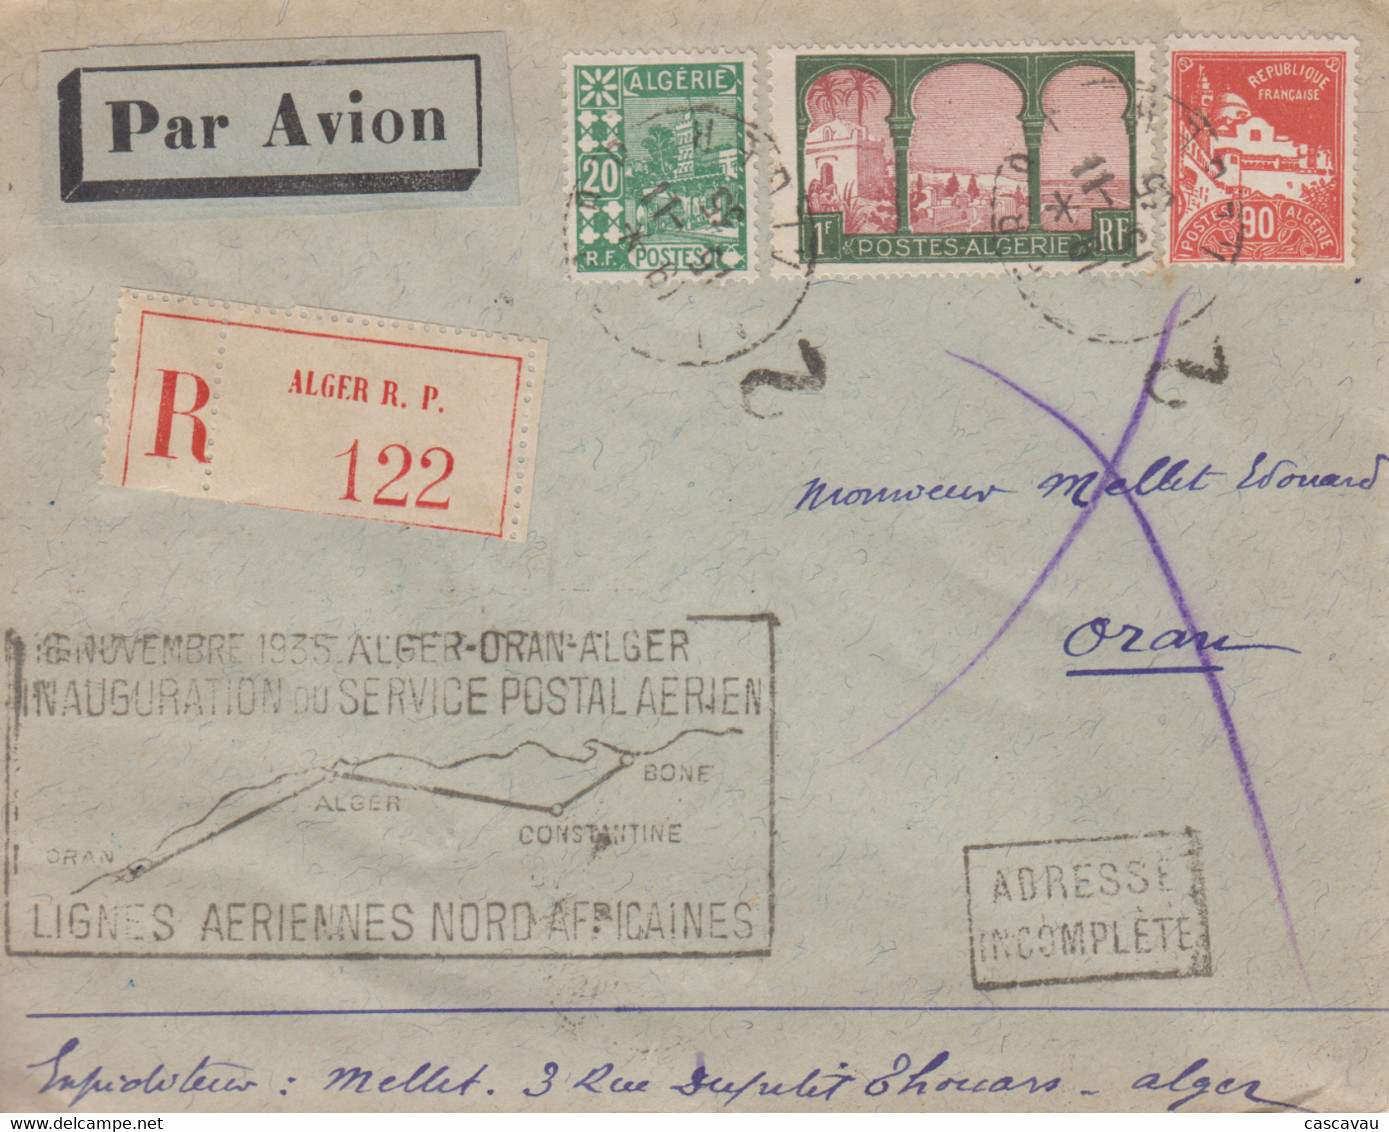 Enveloppe  Recommandée  ALGERIE   Inauguration   Service  Postal   Aérien    ALGER - ORAN - ALGER   1935 - Airmail